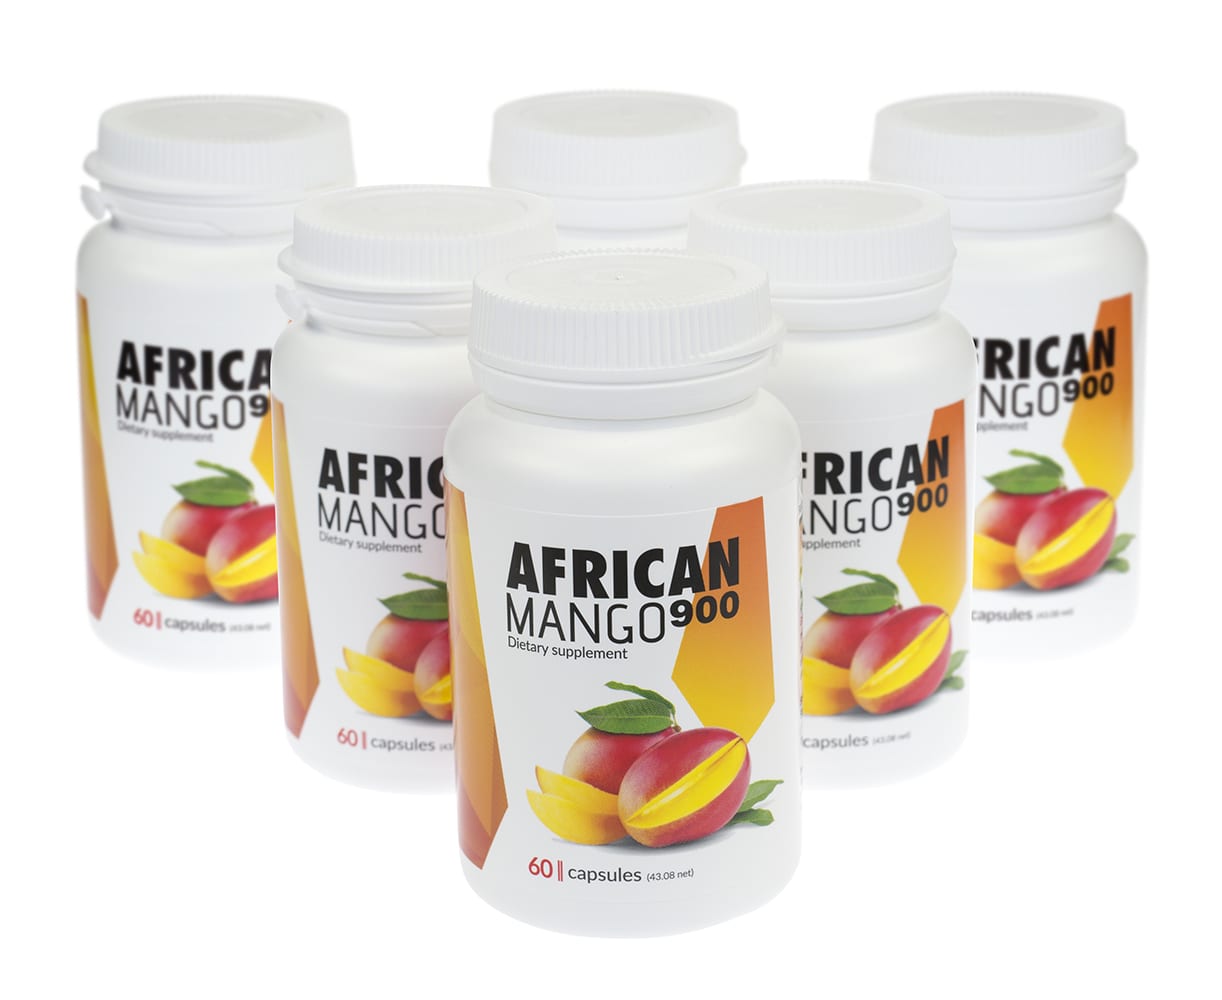 African mango pomocne w procesie odchudzania